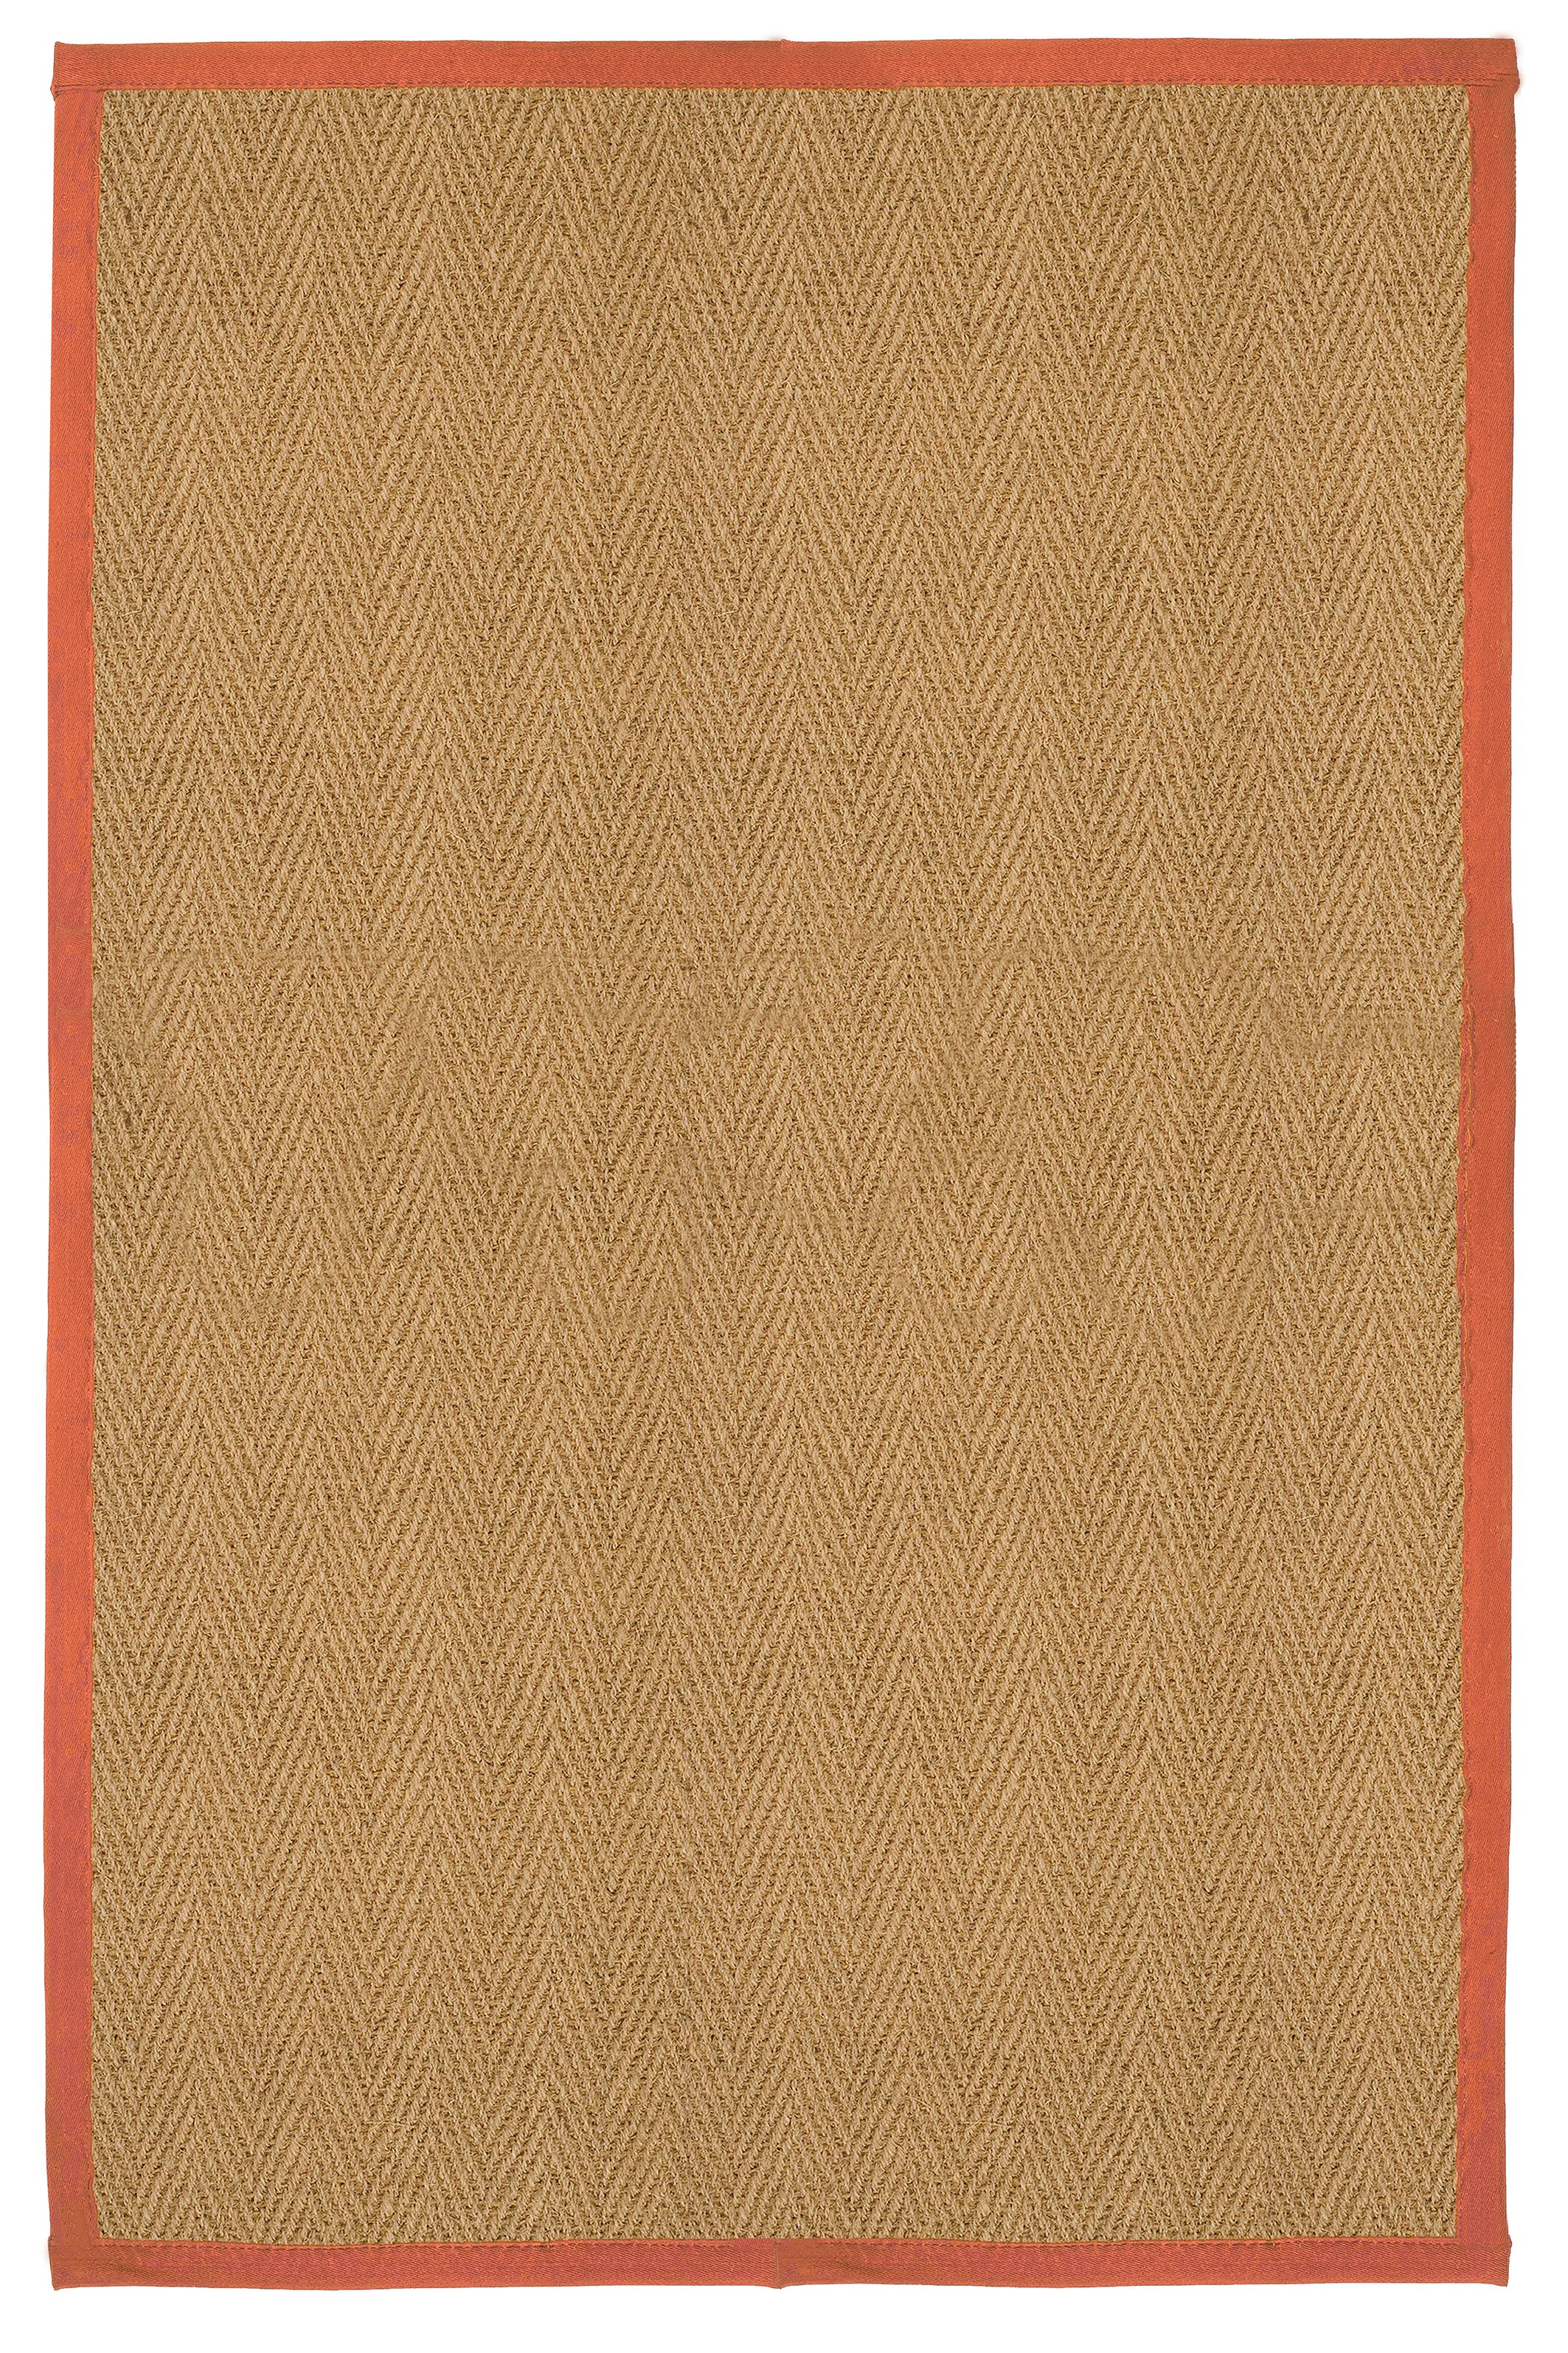 Herringbone weave Brown, orange Rug 200cmx135cm